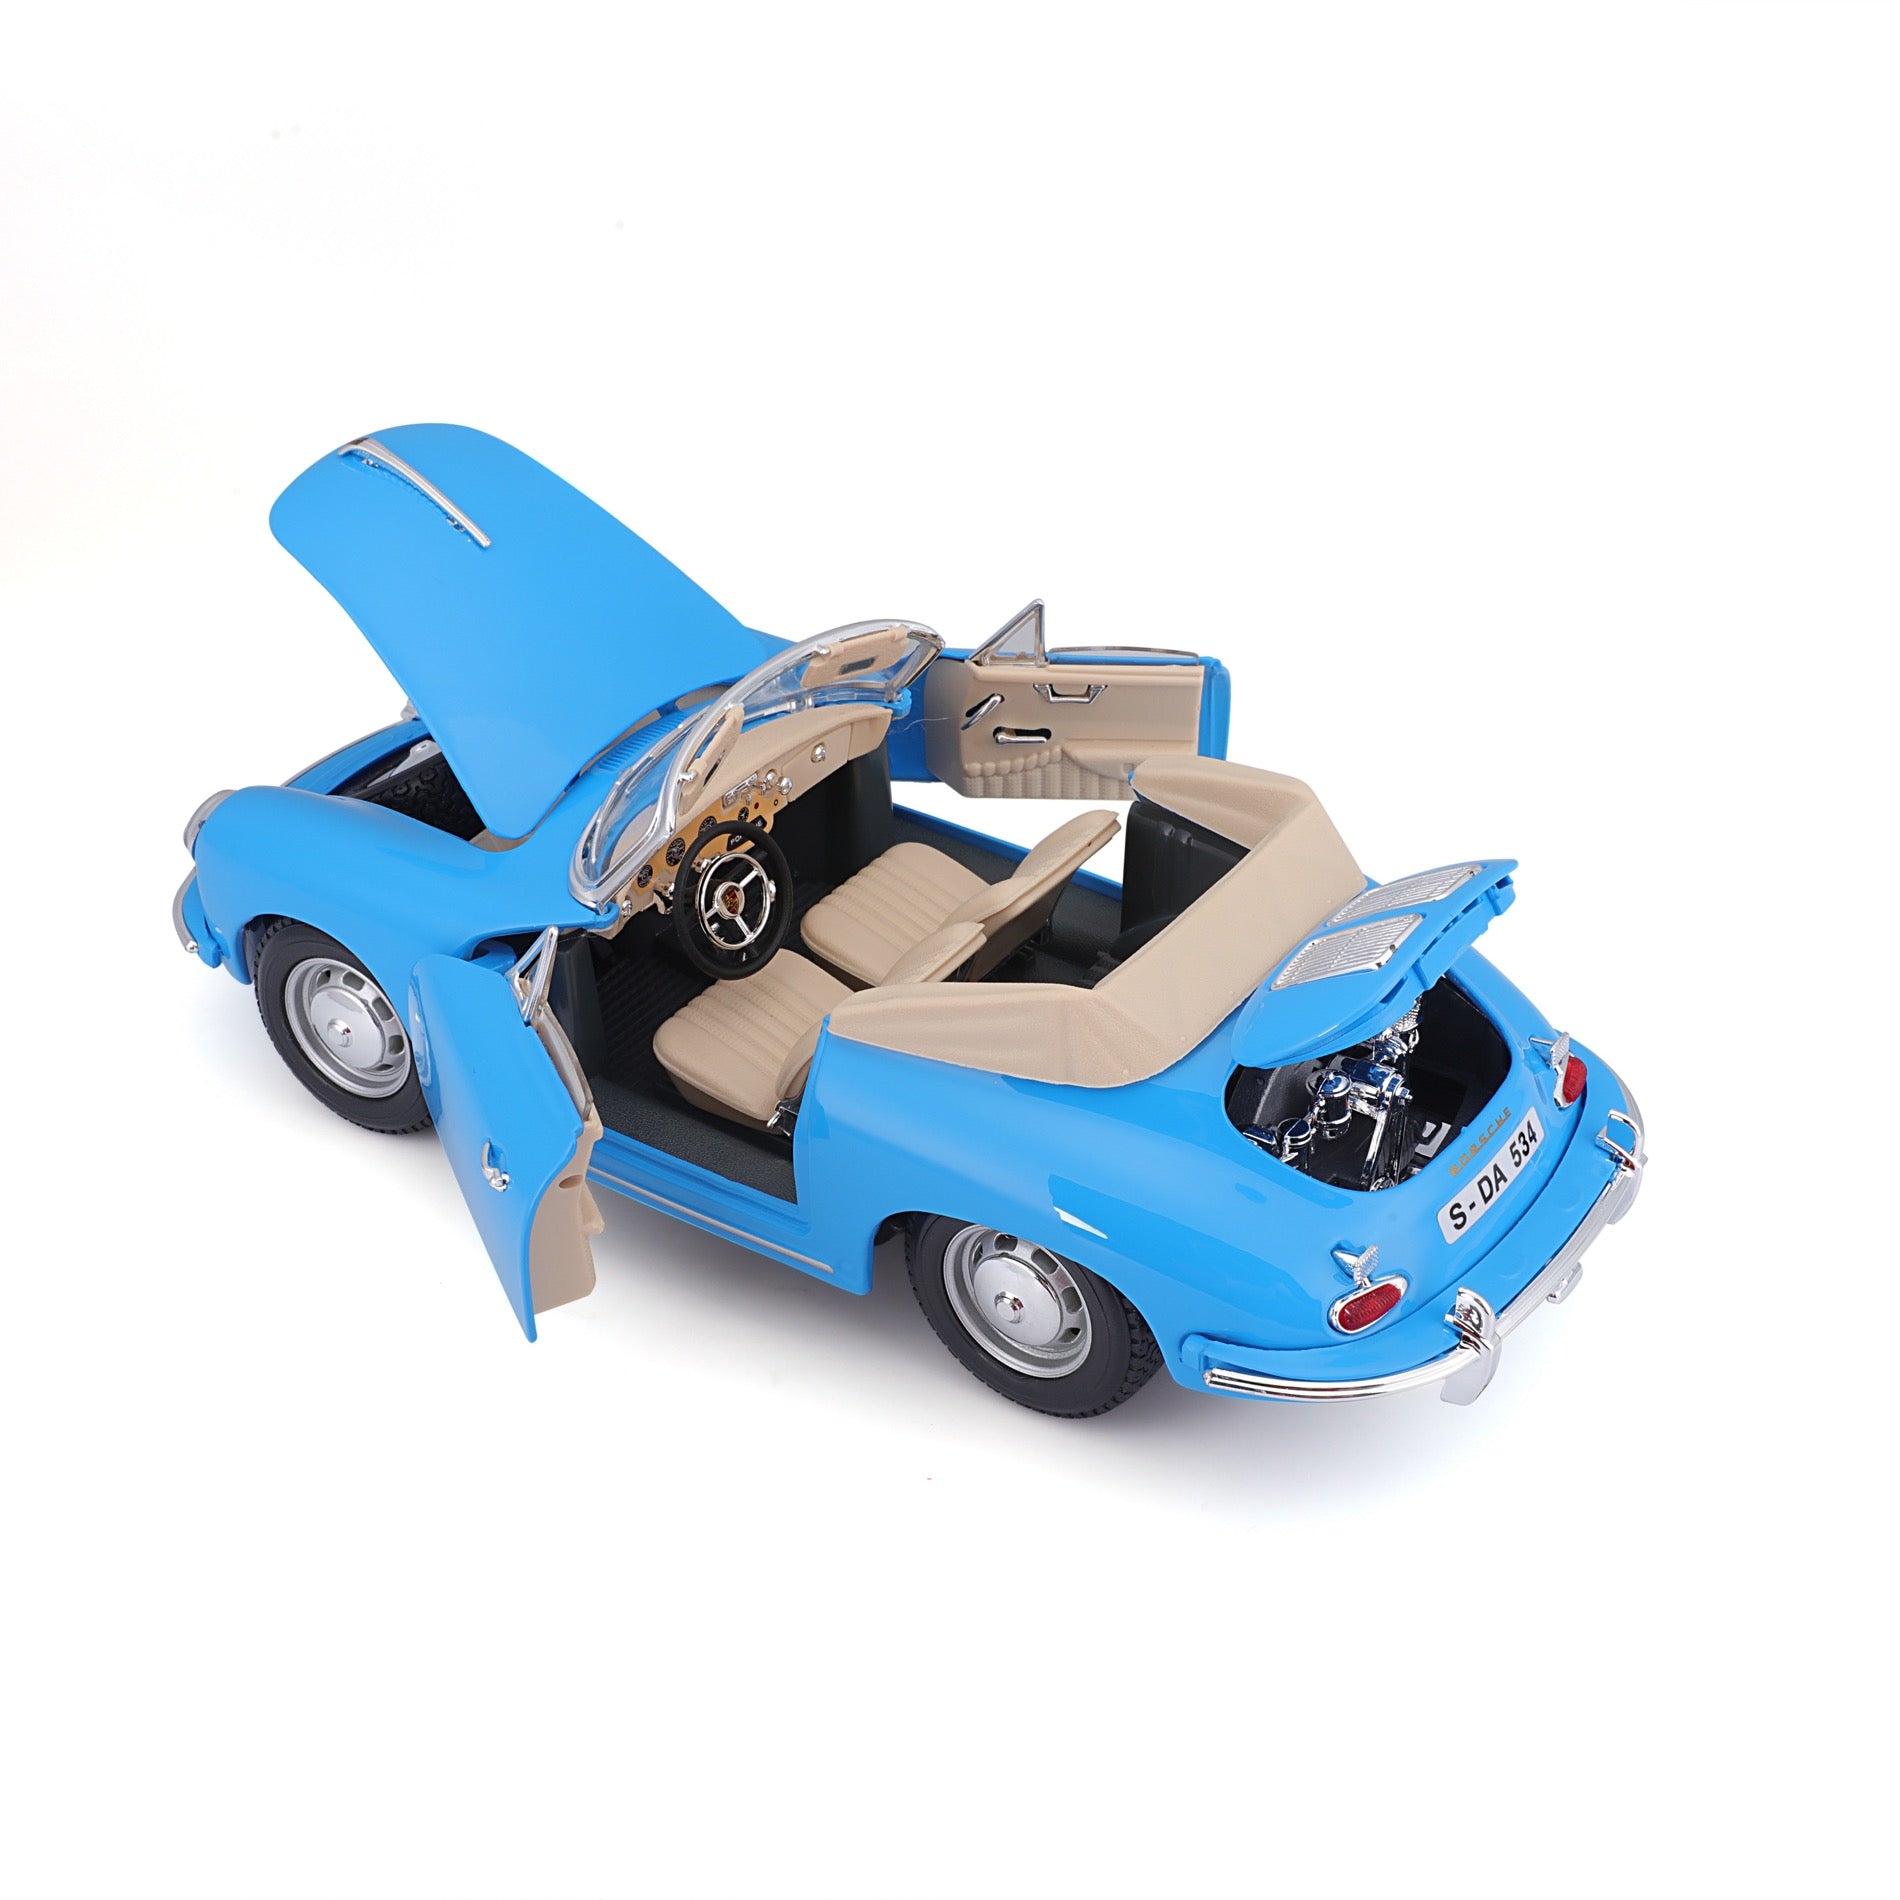 18-12025 - Bburago - 1:18 - 1961 Porsche 356B Cabriolet - Blue 